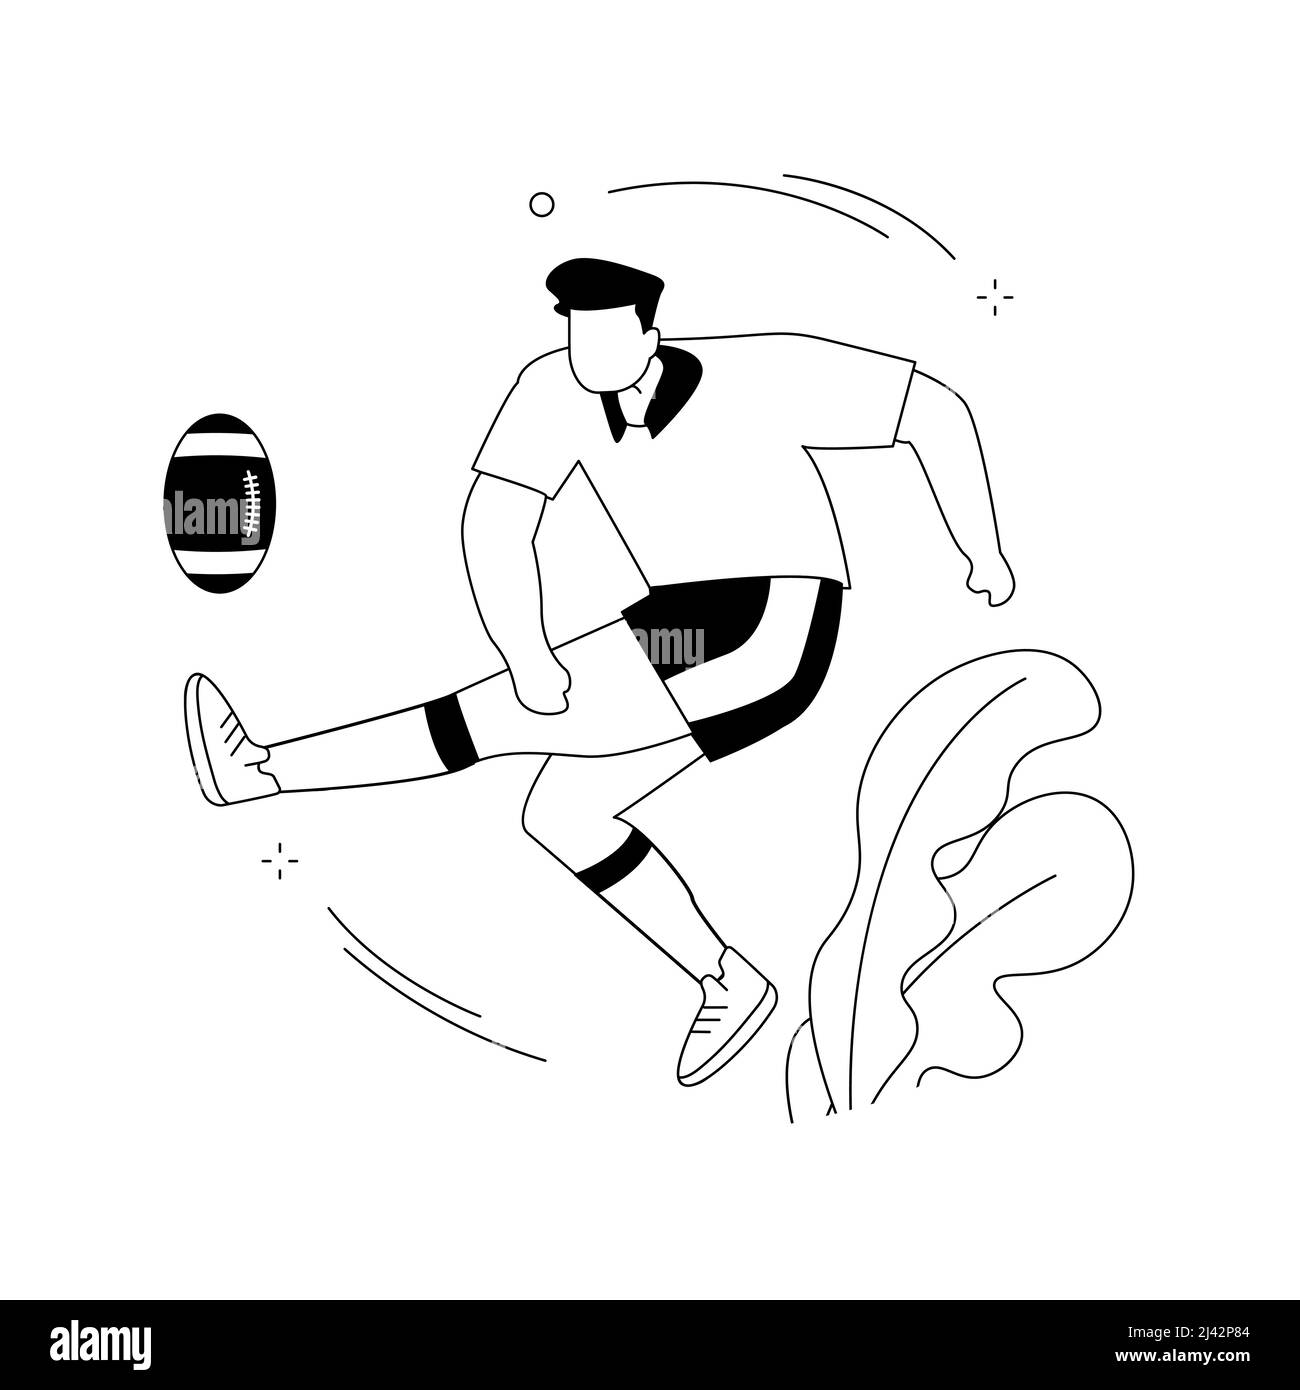 Illustration du vecteur de concept abstrait Rugby.Football américain, joueur professionnel, terrain de jeu, équipement d'entraînement, ballon de match,coupe du monde Illustration de Vecteur